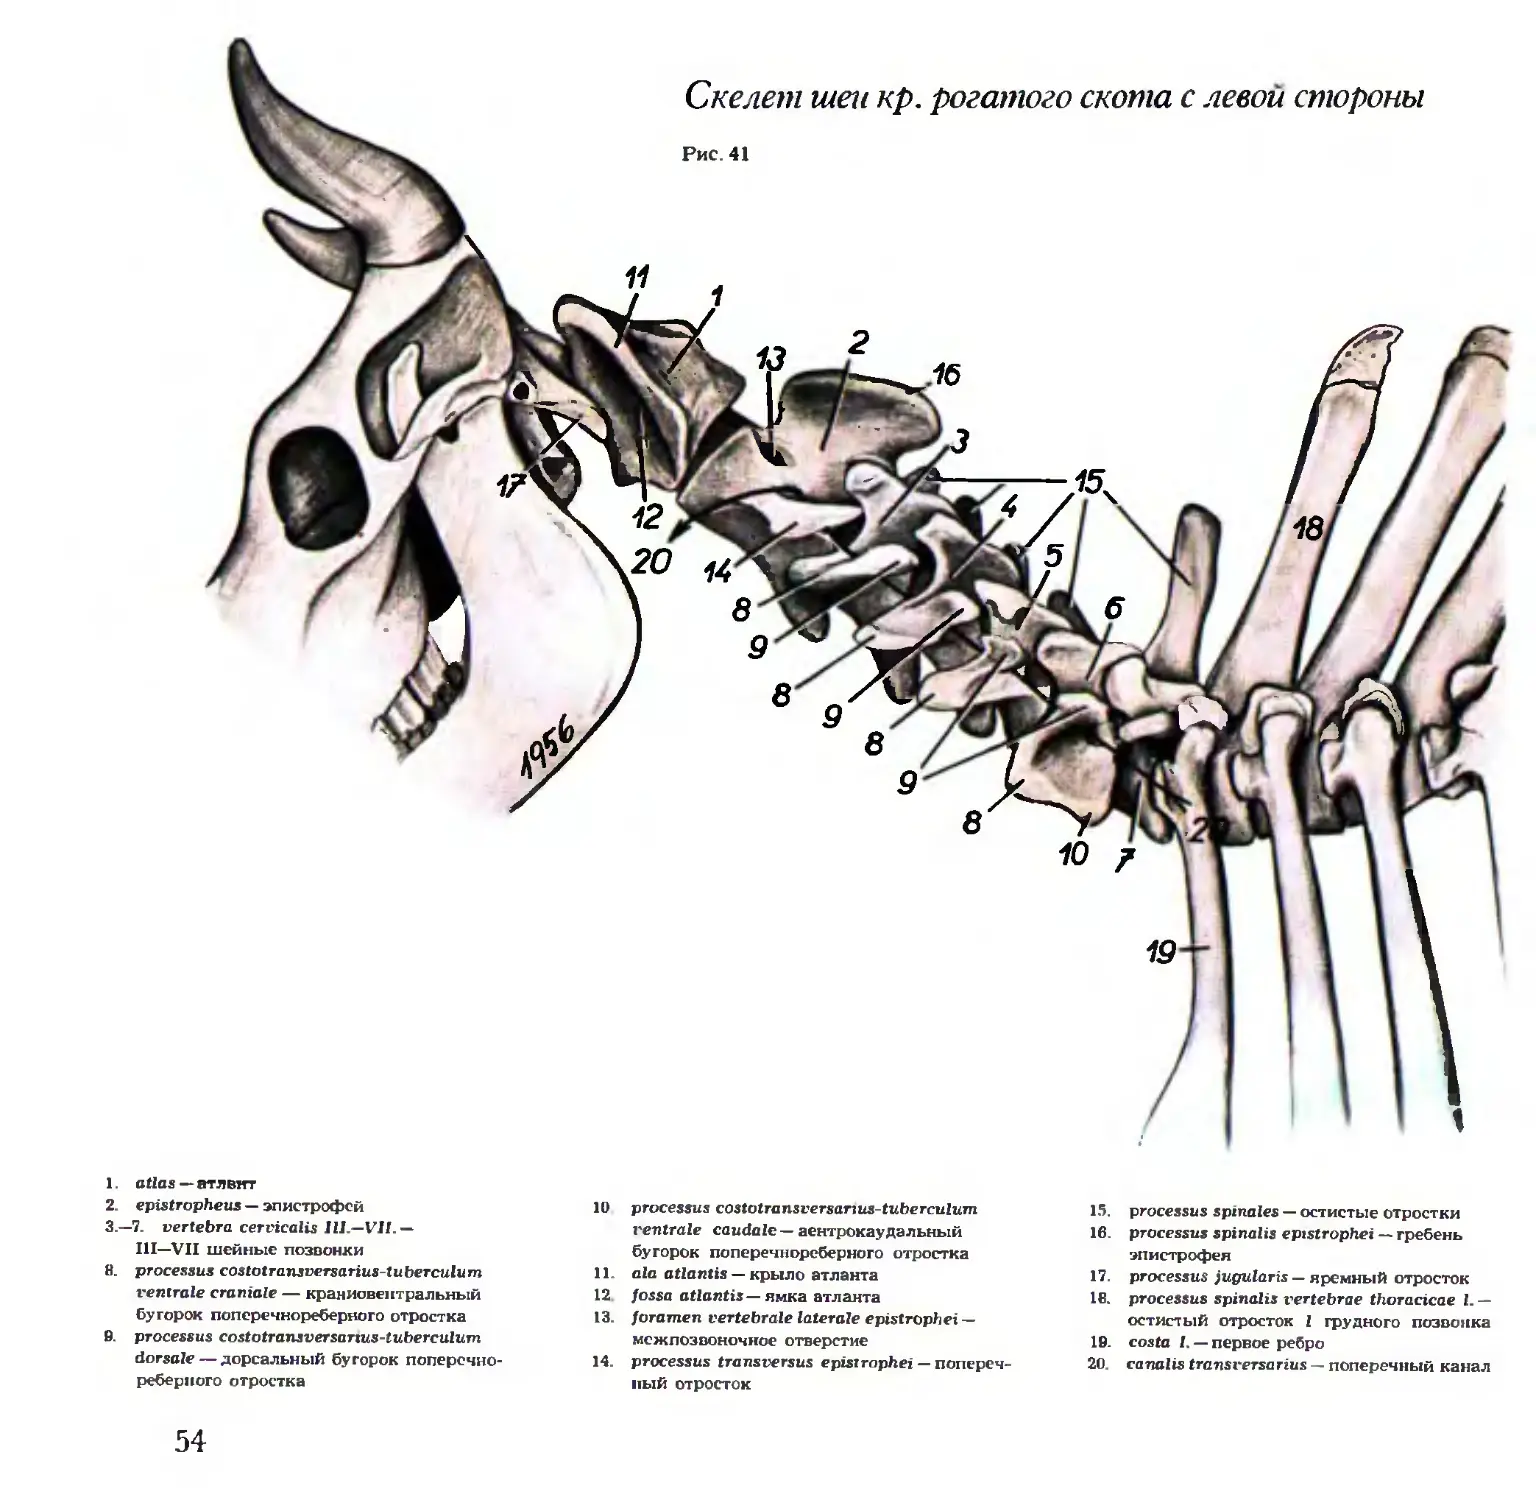 Анатомия грудных позвонков крупного рогатого скота